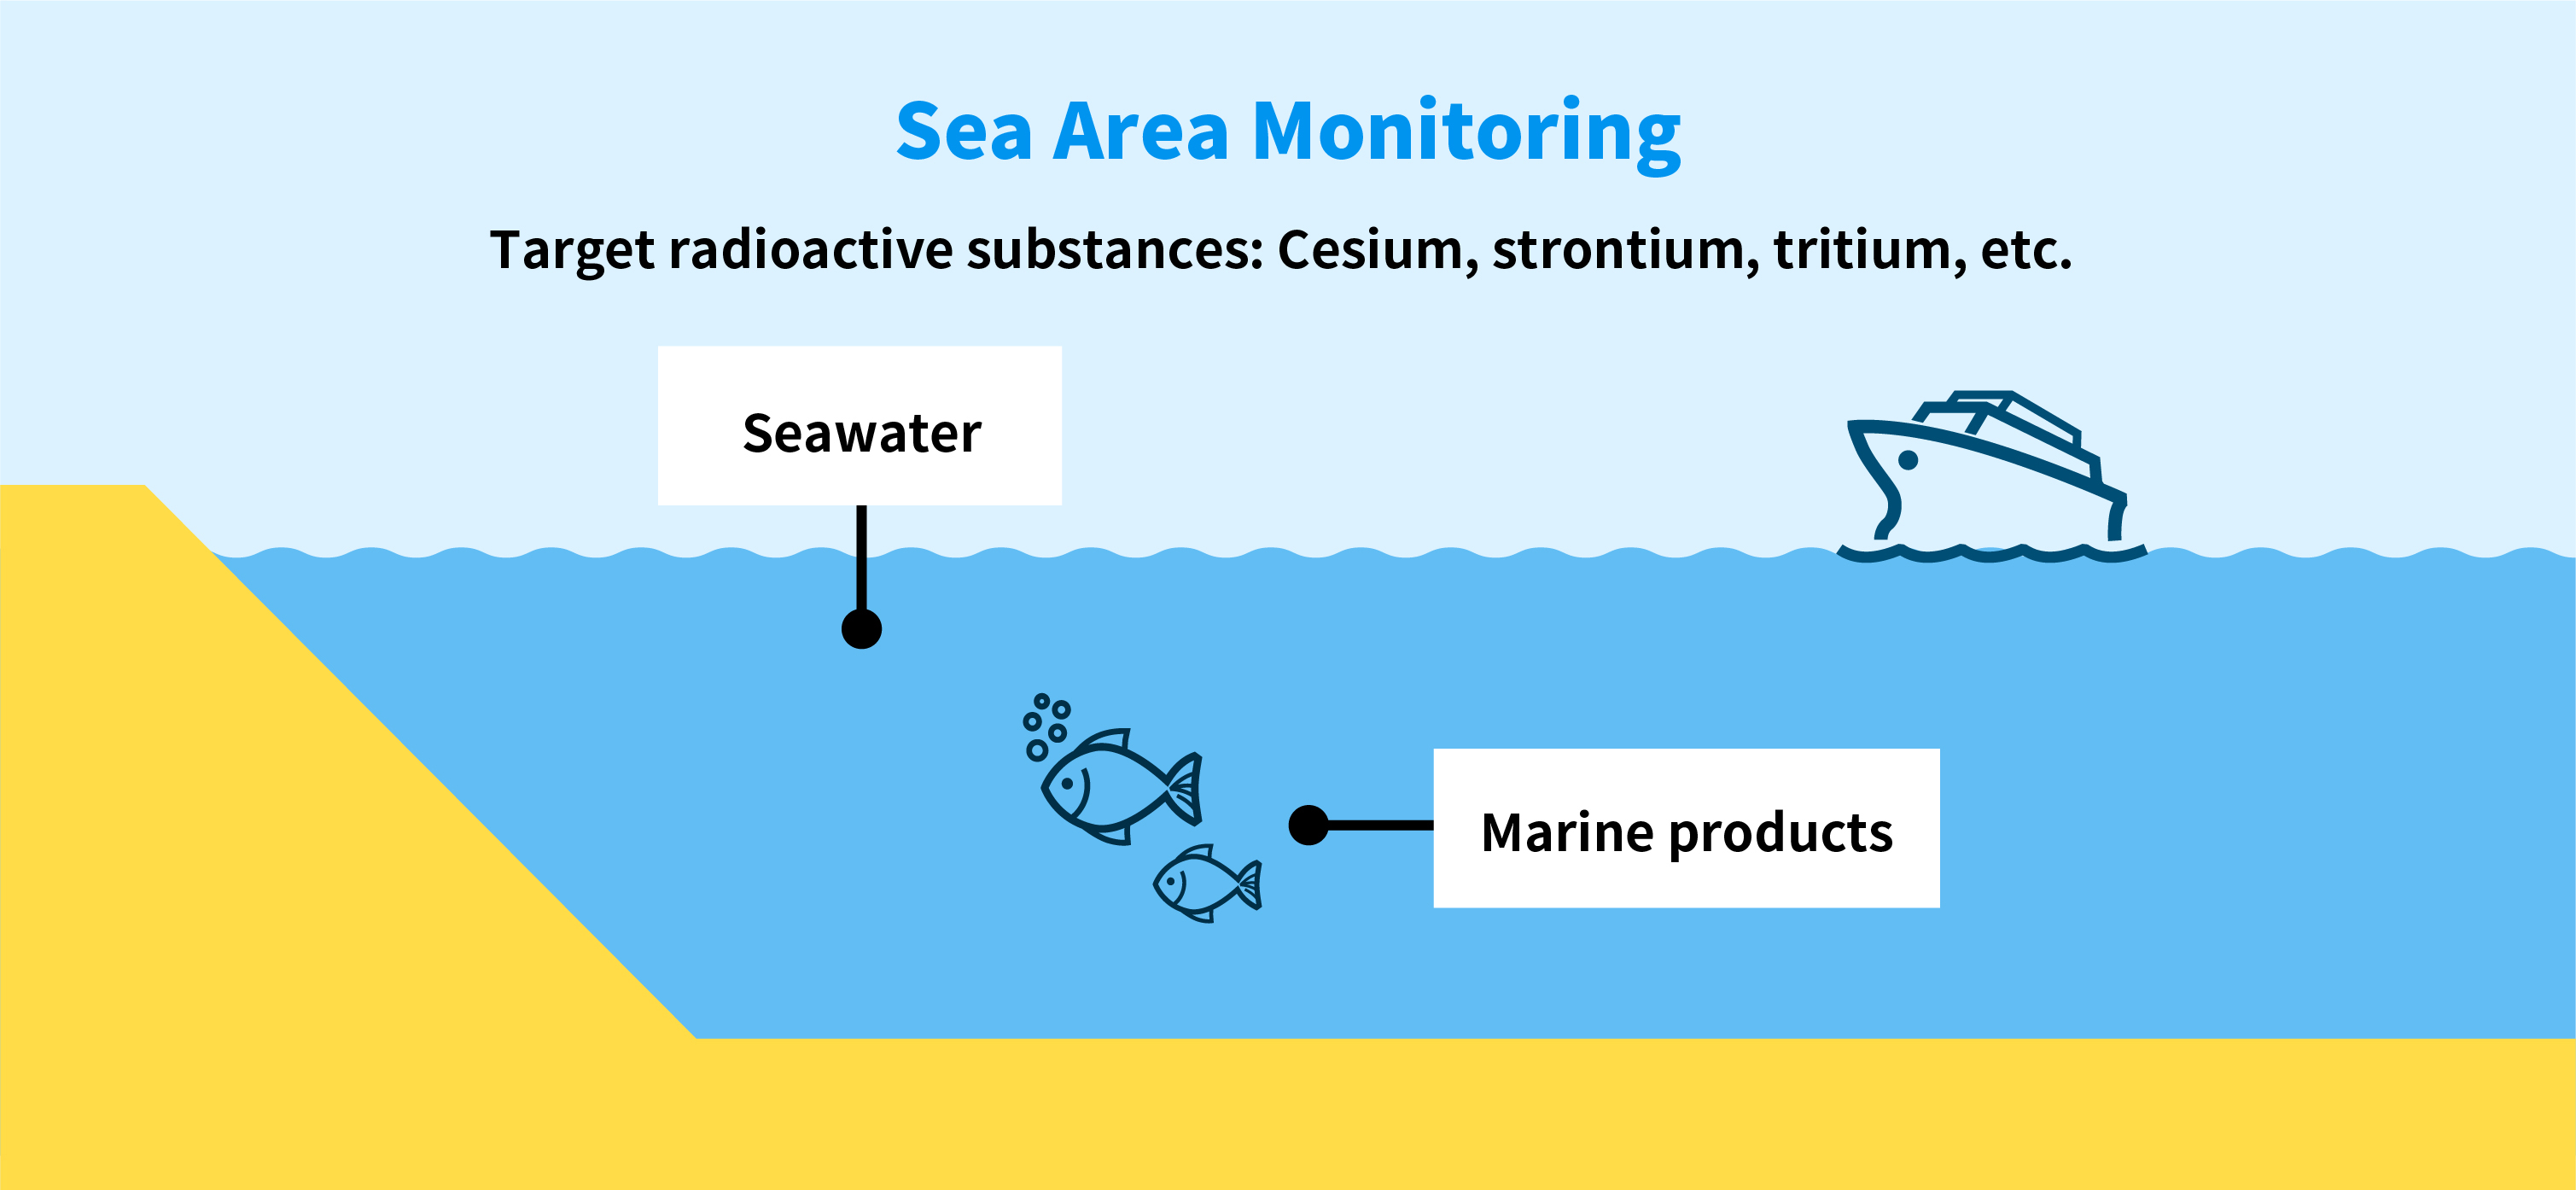 Sea Area Monitoring, Target radioactive substances: Cesium, strontium, tritium, etc. 
                      Seawater,Marine products